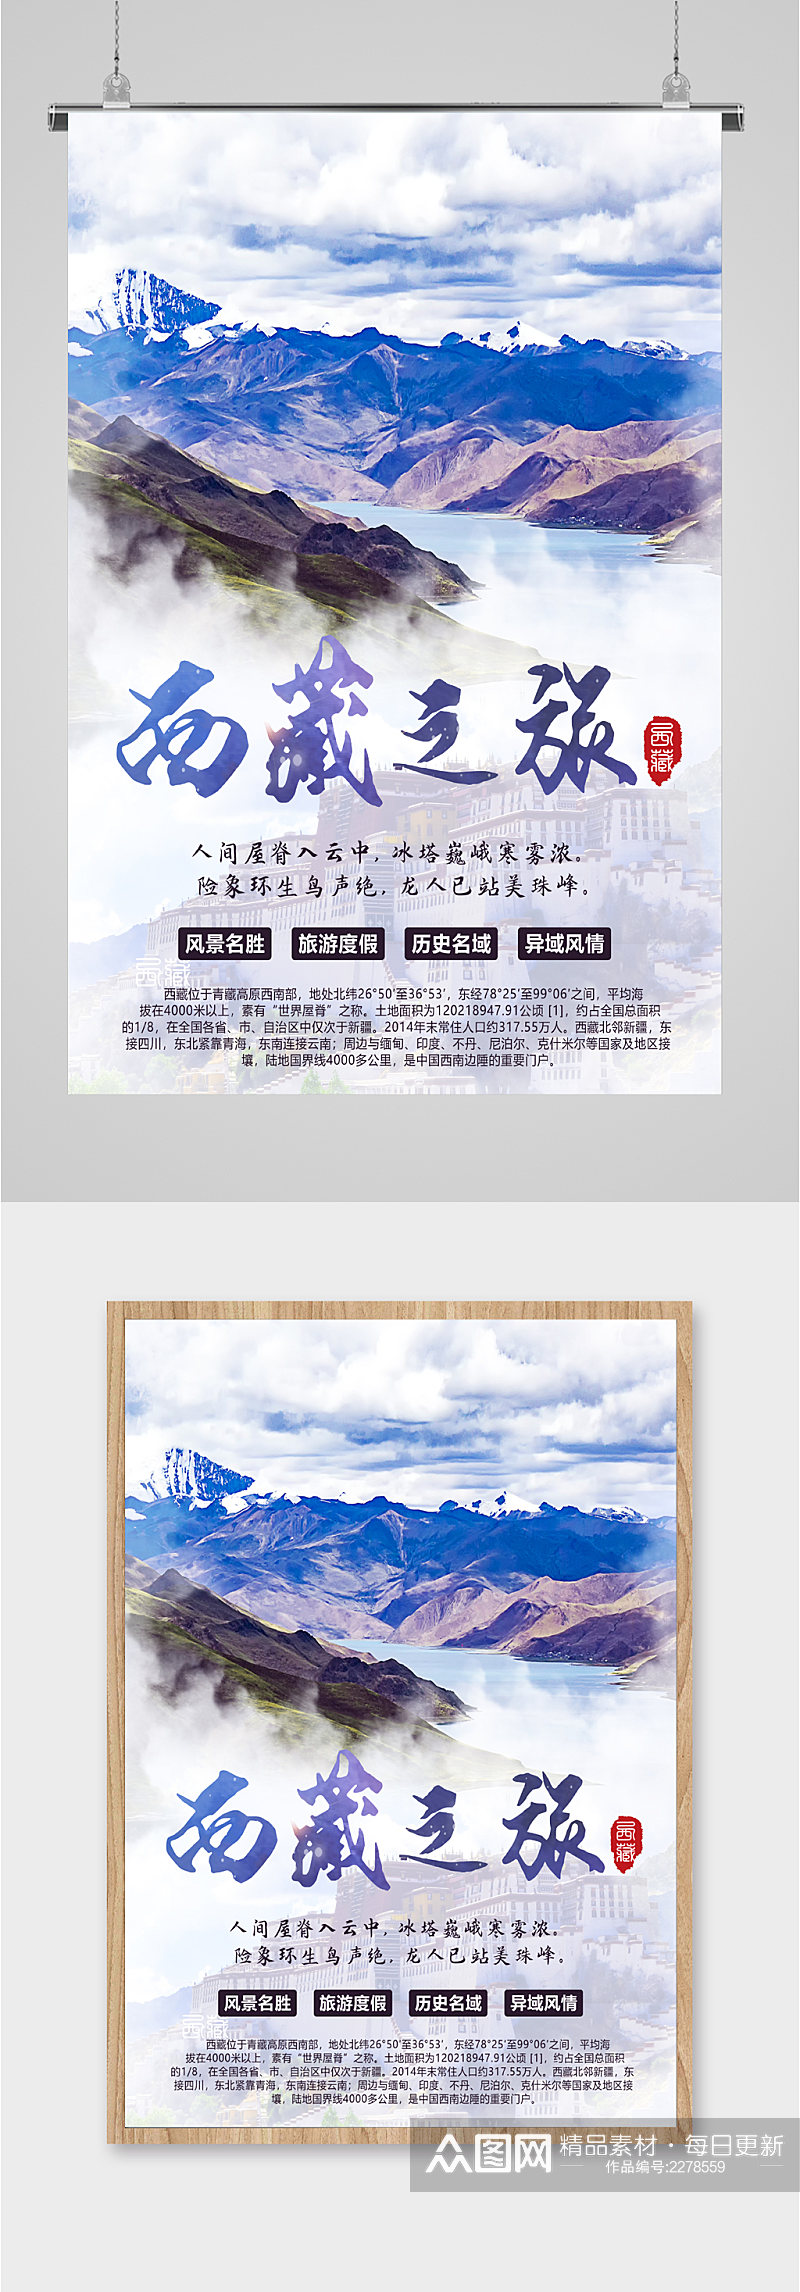 西藏之旅风景海报素材